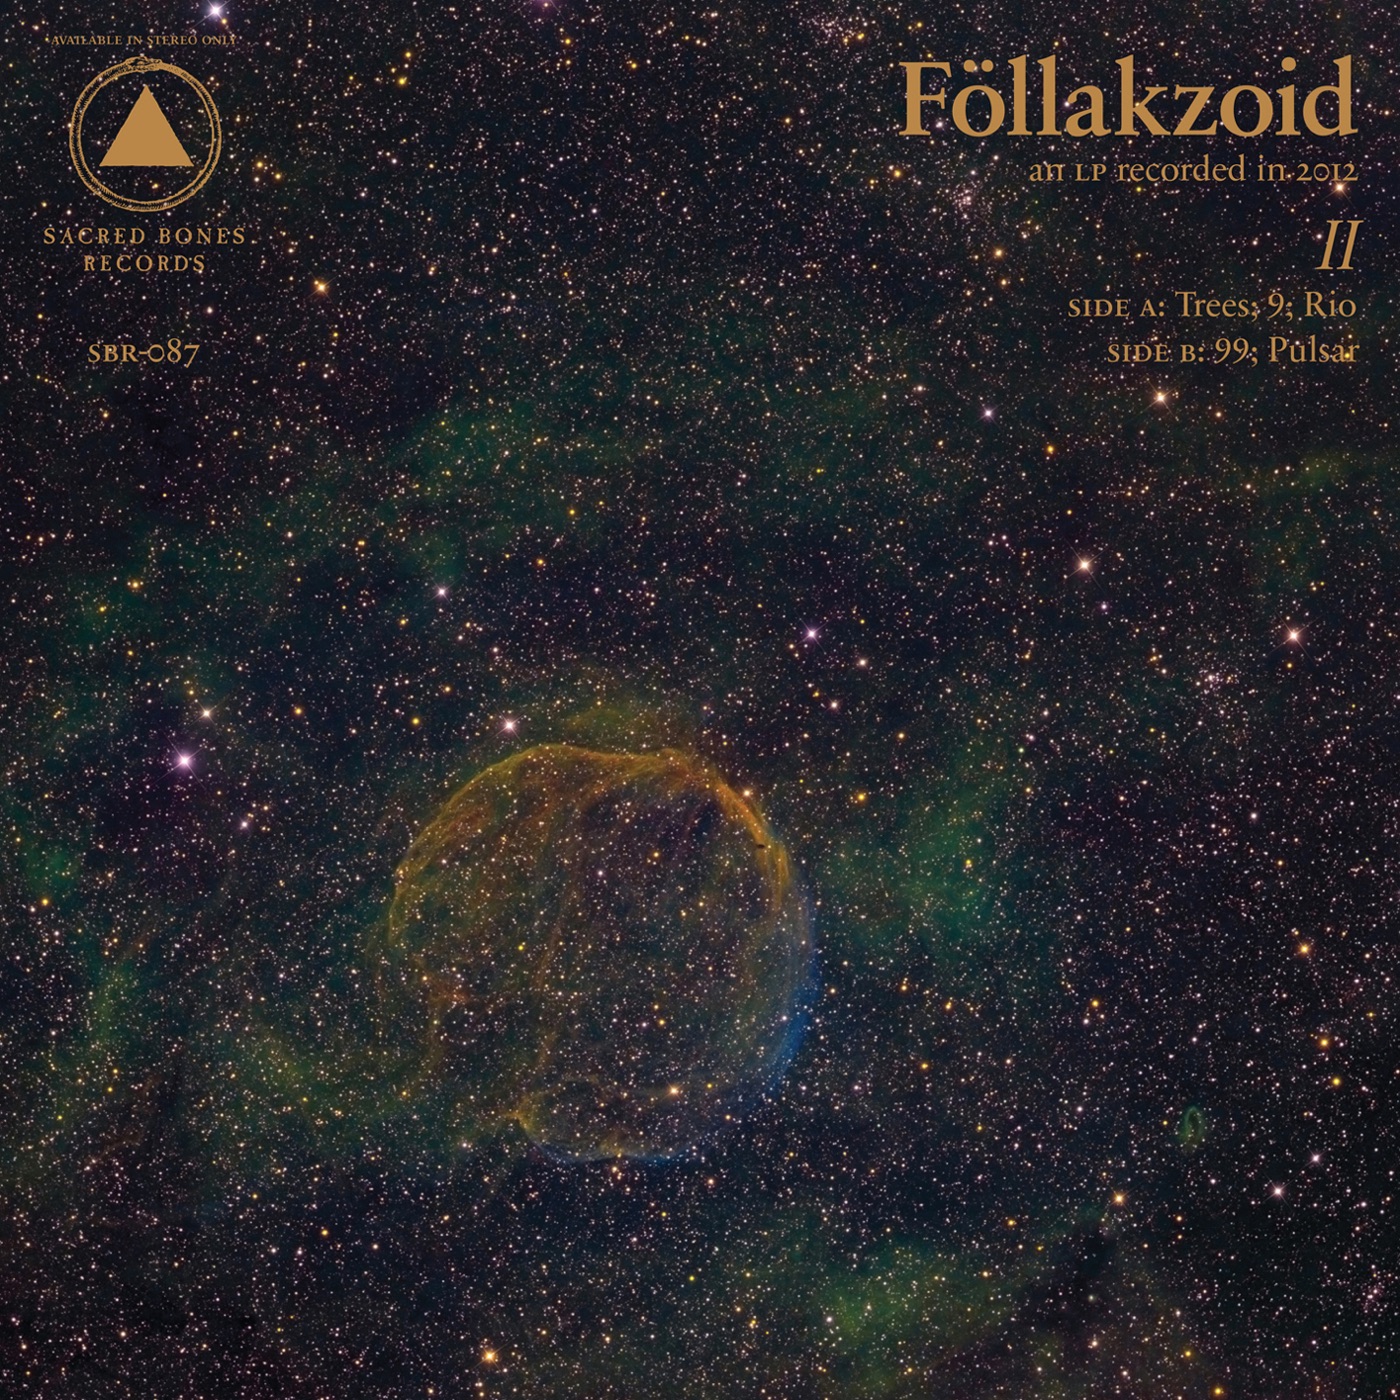 II by Föllakzoid